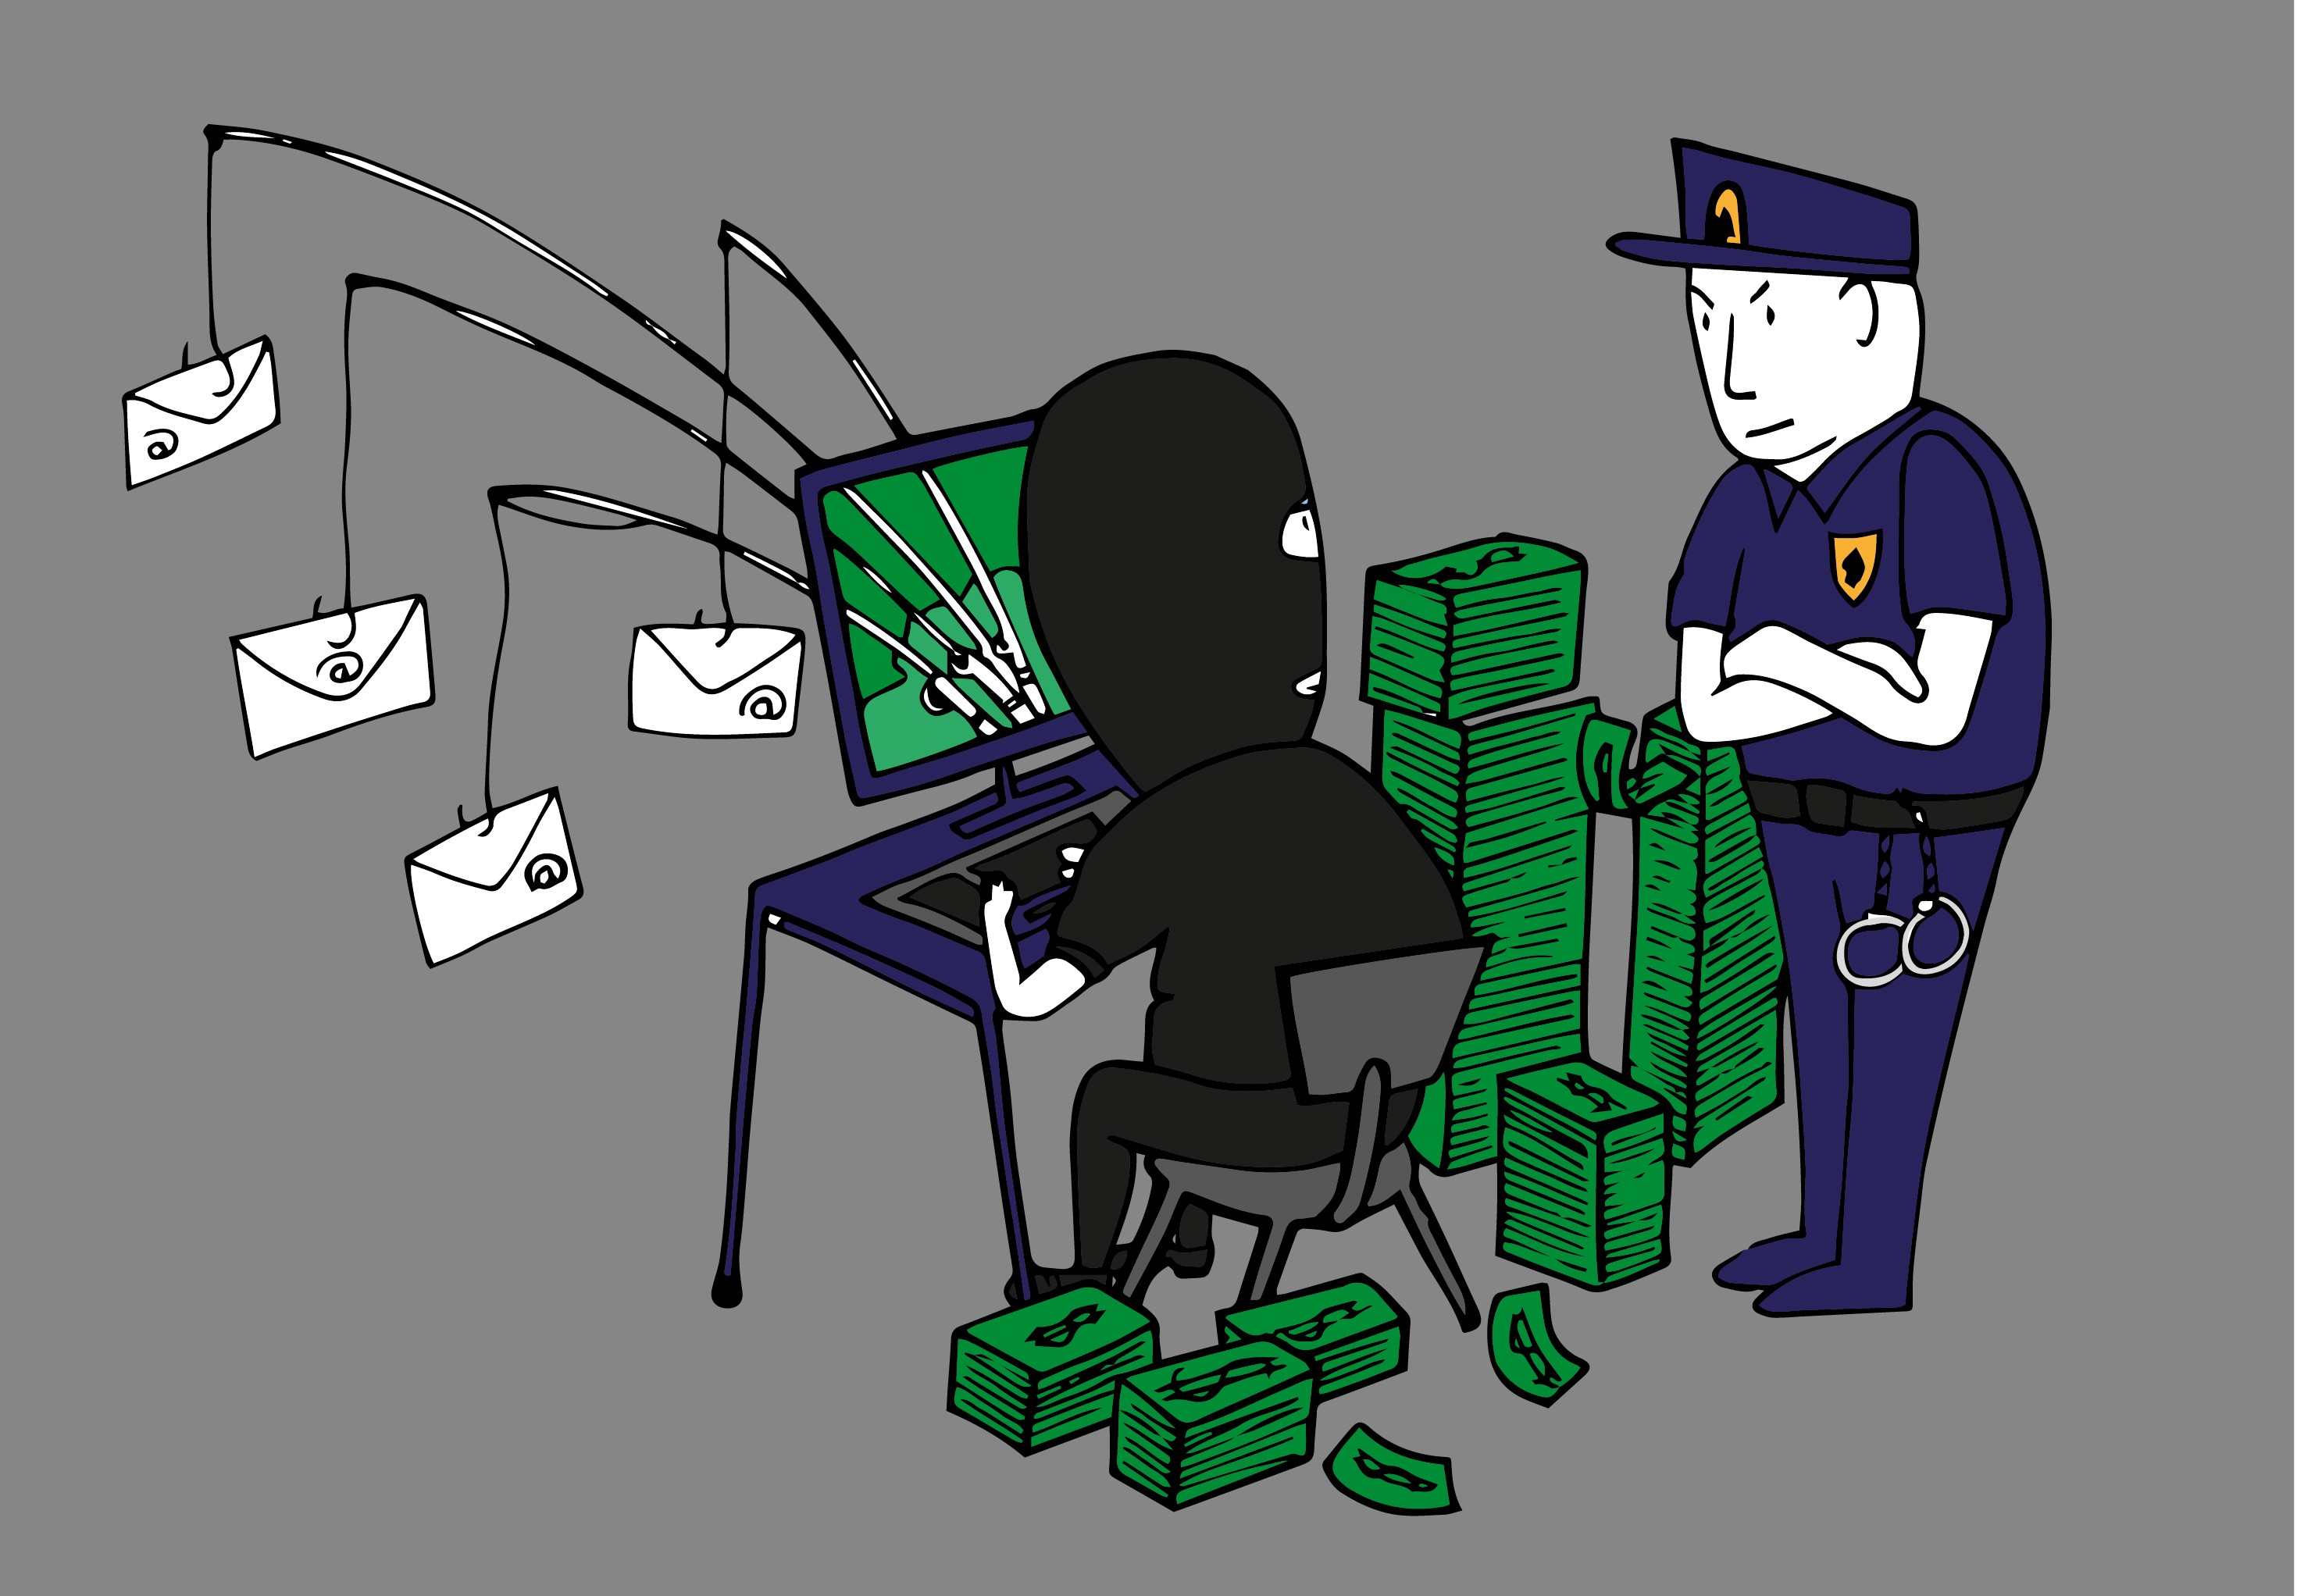 Illustratie van een hacker met een politieagent achter zich